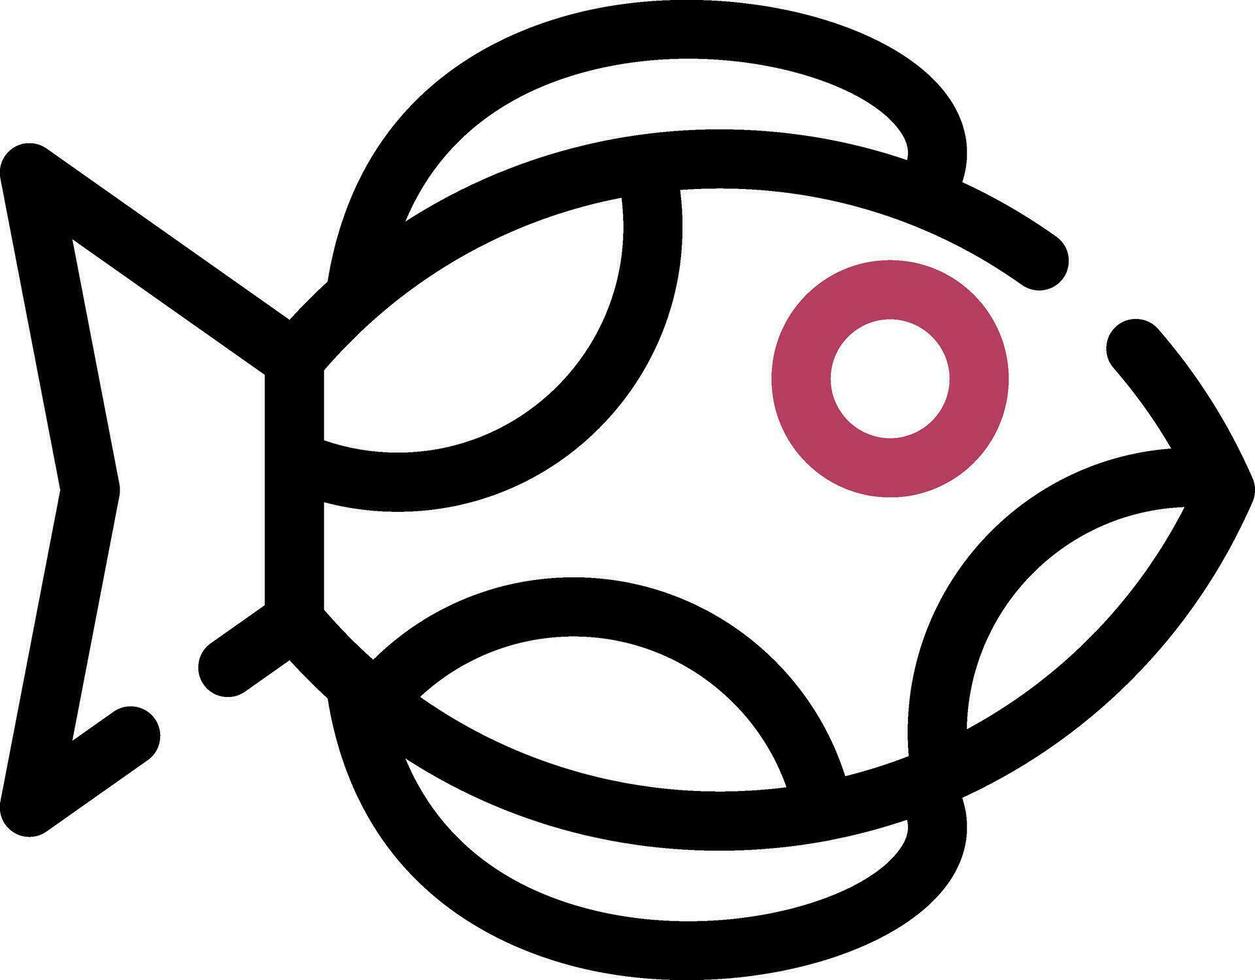 Trout Creative Icon Design vector